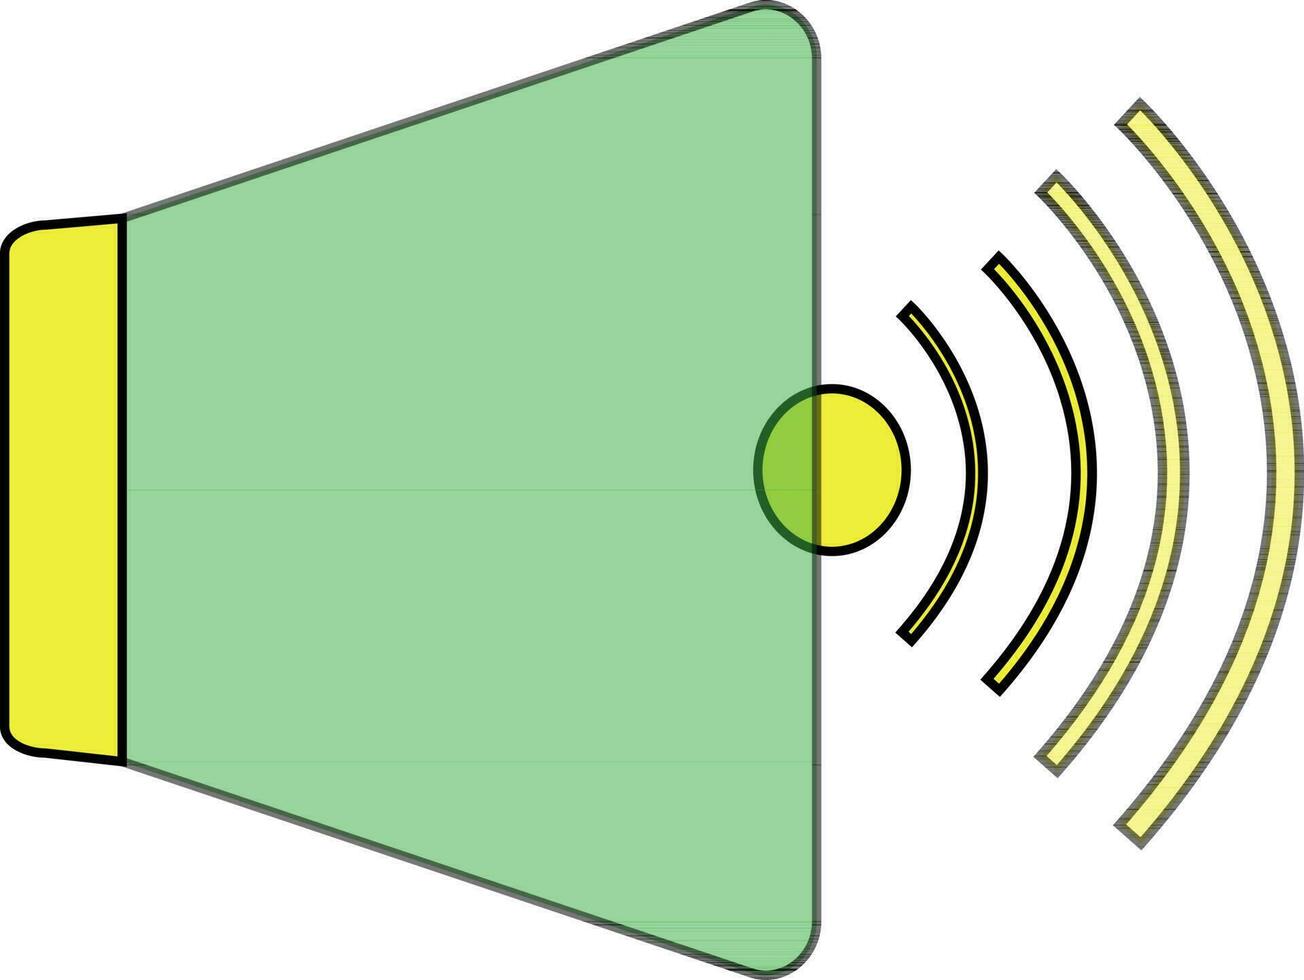 högtalare i grön och gul Färg. vektor